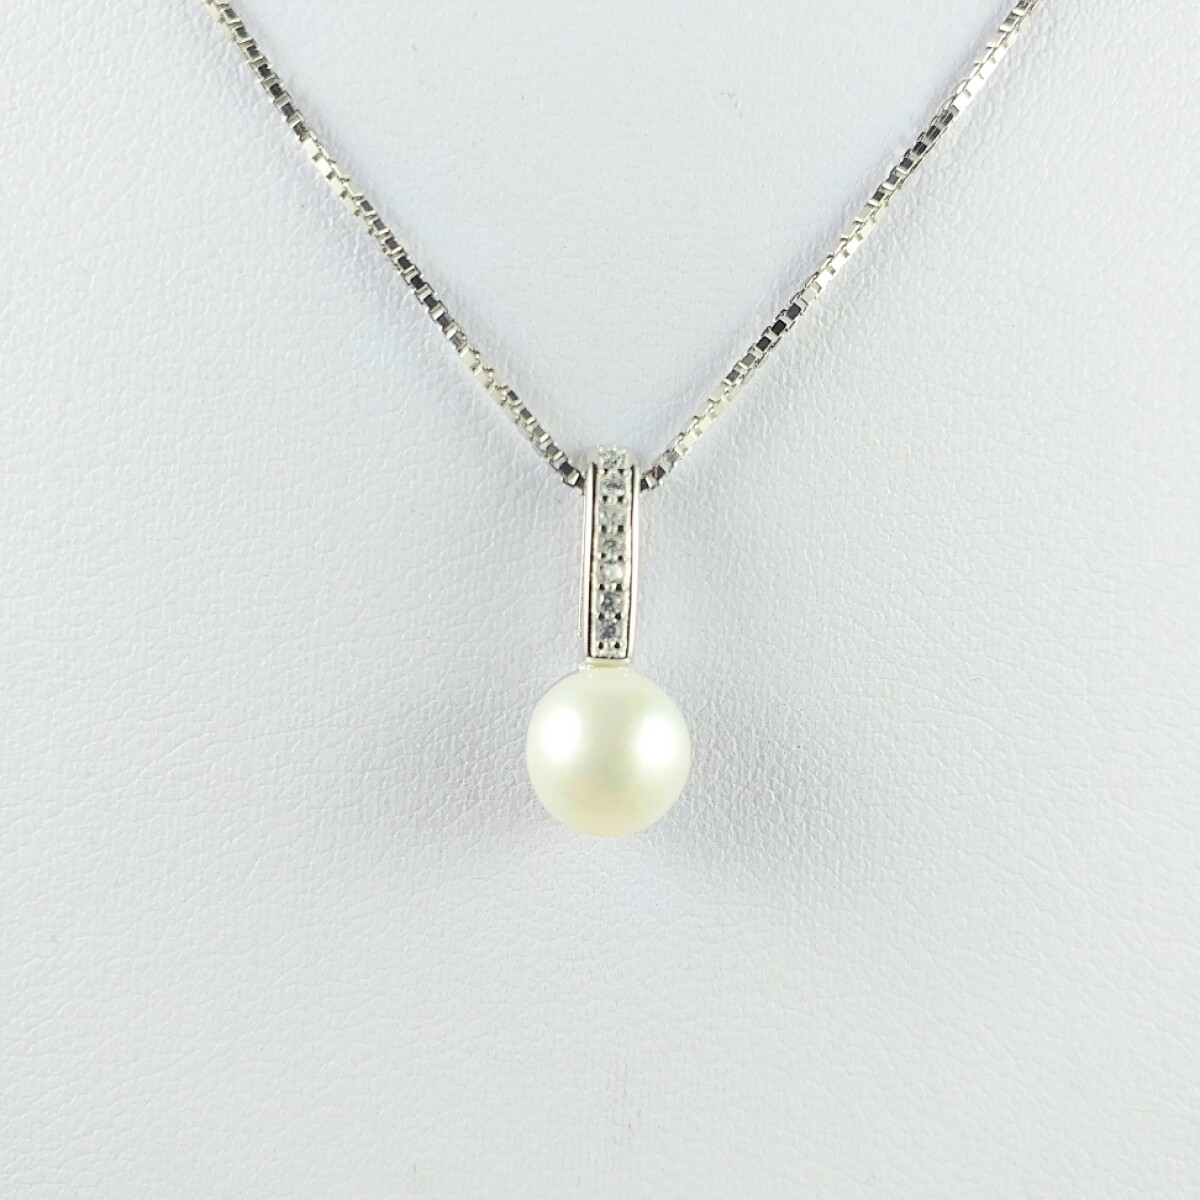 Colgante con perla natural de río 8 mm y 7 circonias engarzadas a al inglesa, con cadena en plata 925 y rodio. 